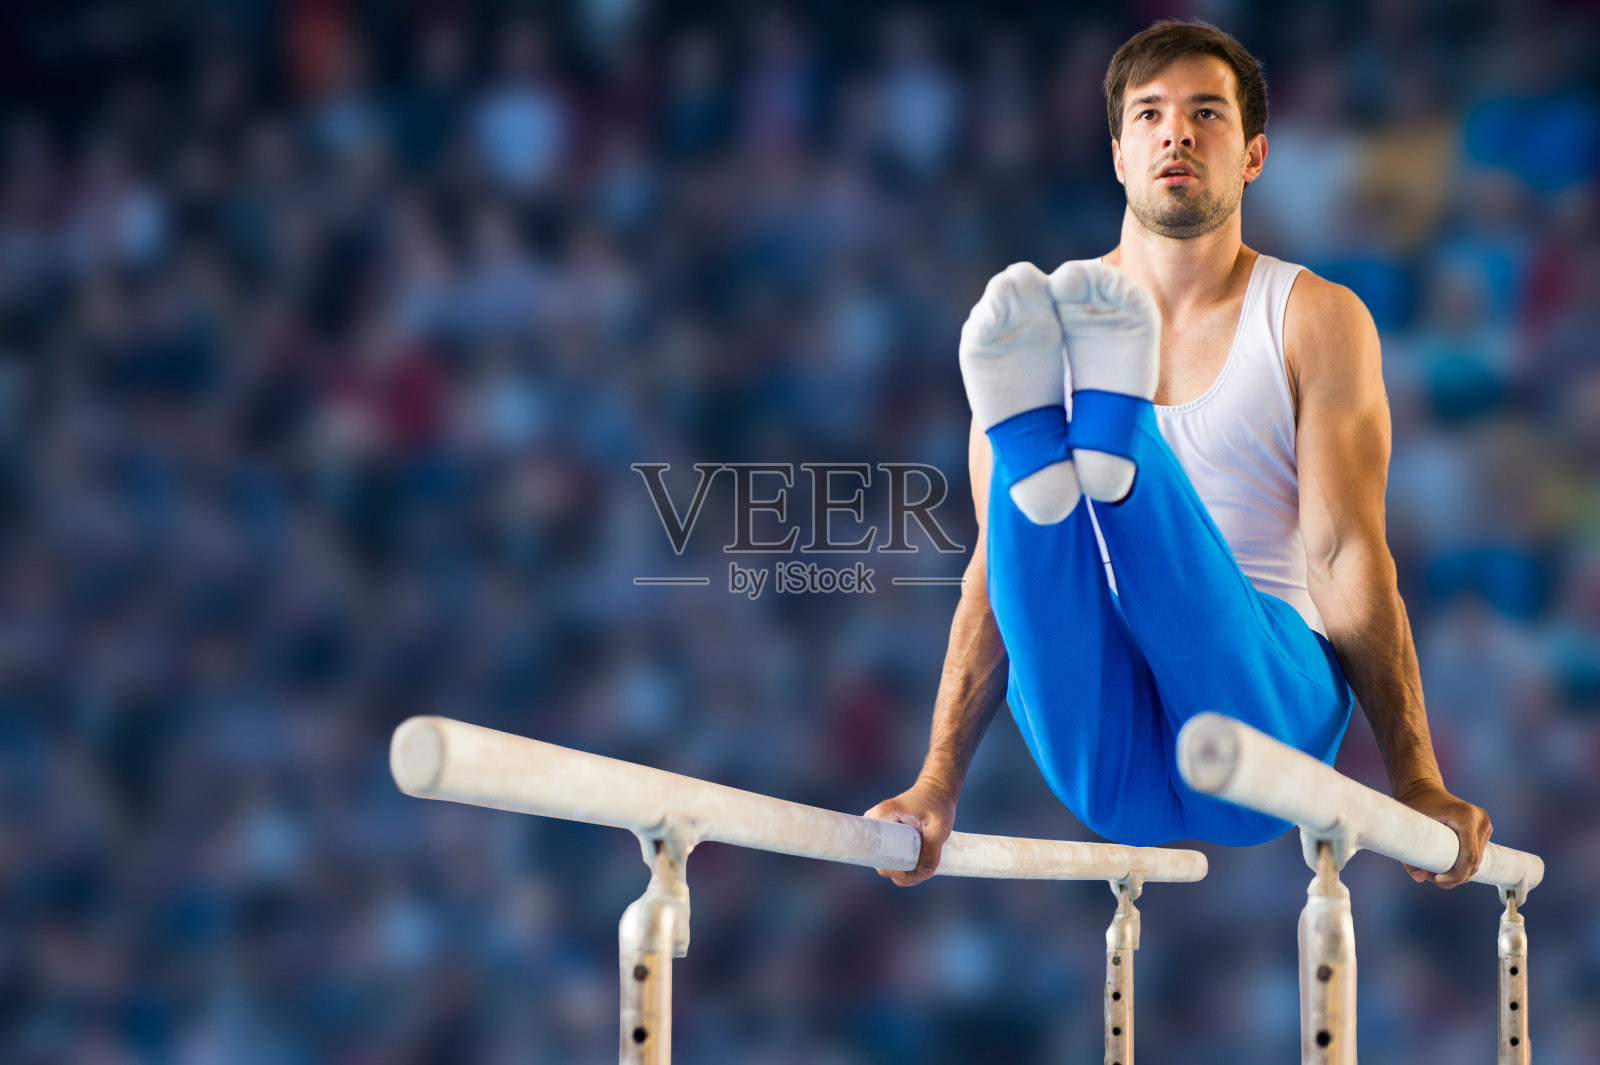 男子体操运动员在双杠上表演常规动作照片摄影图片